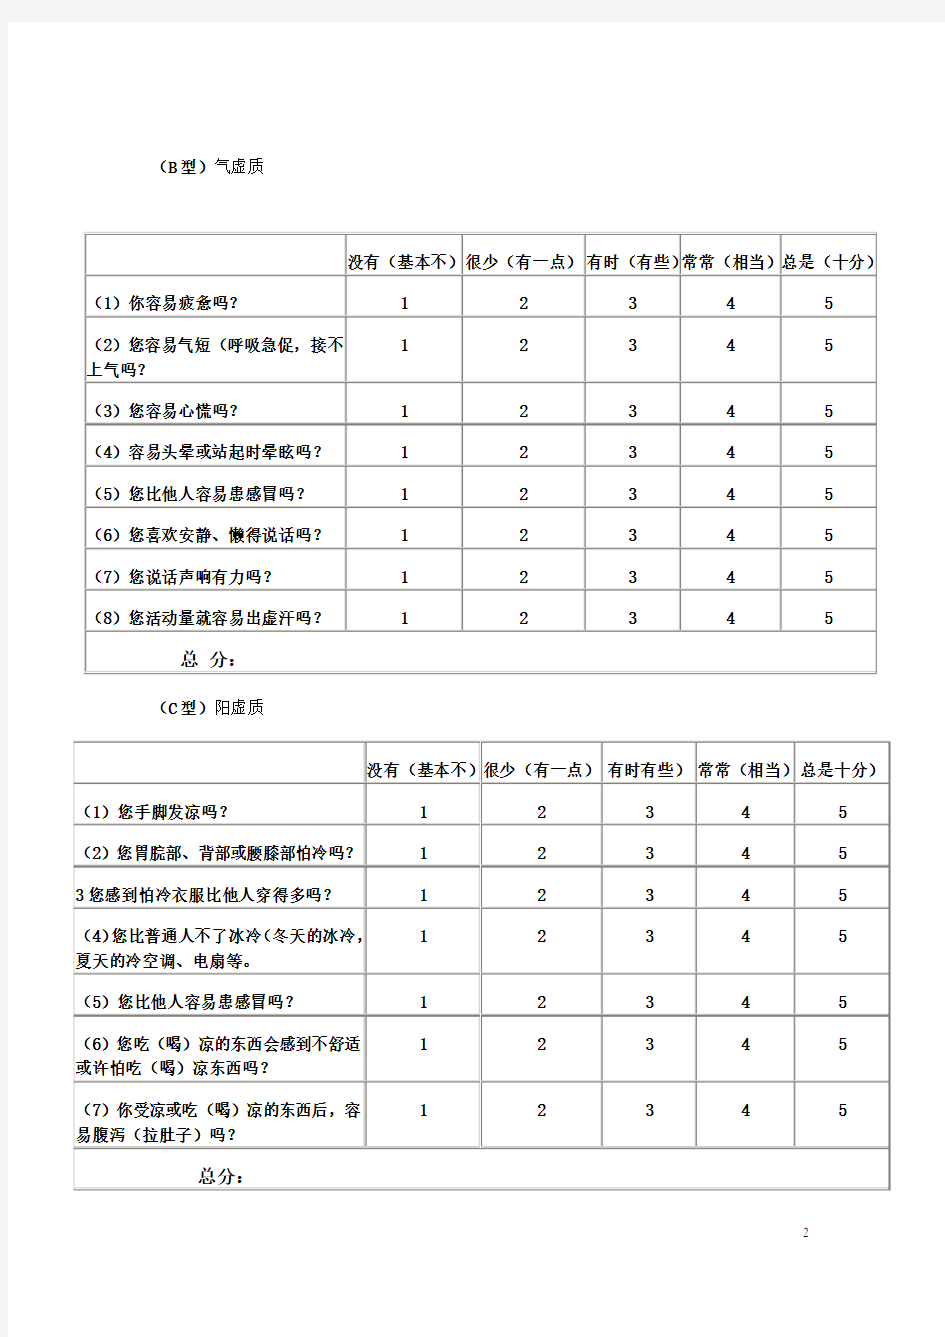 中医体质分类与判定自测表及体质调养方法(标准版)